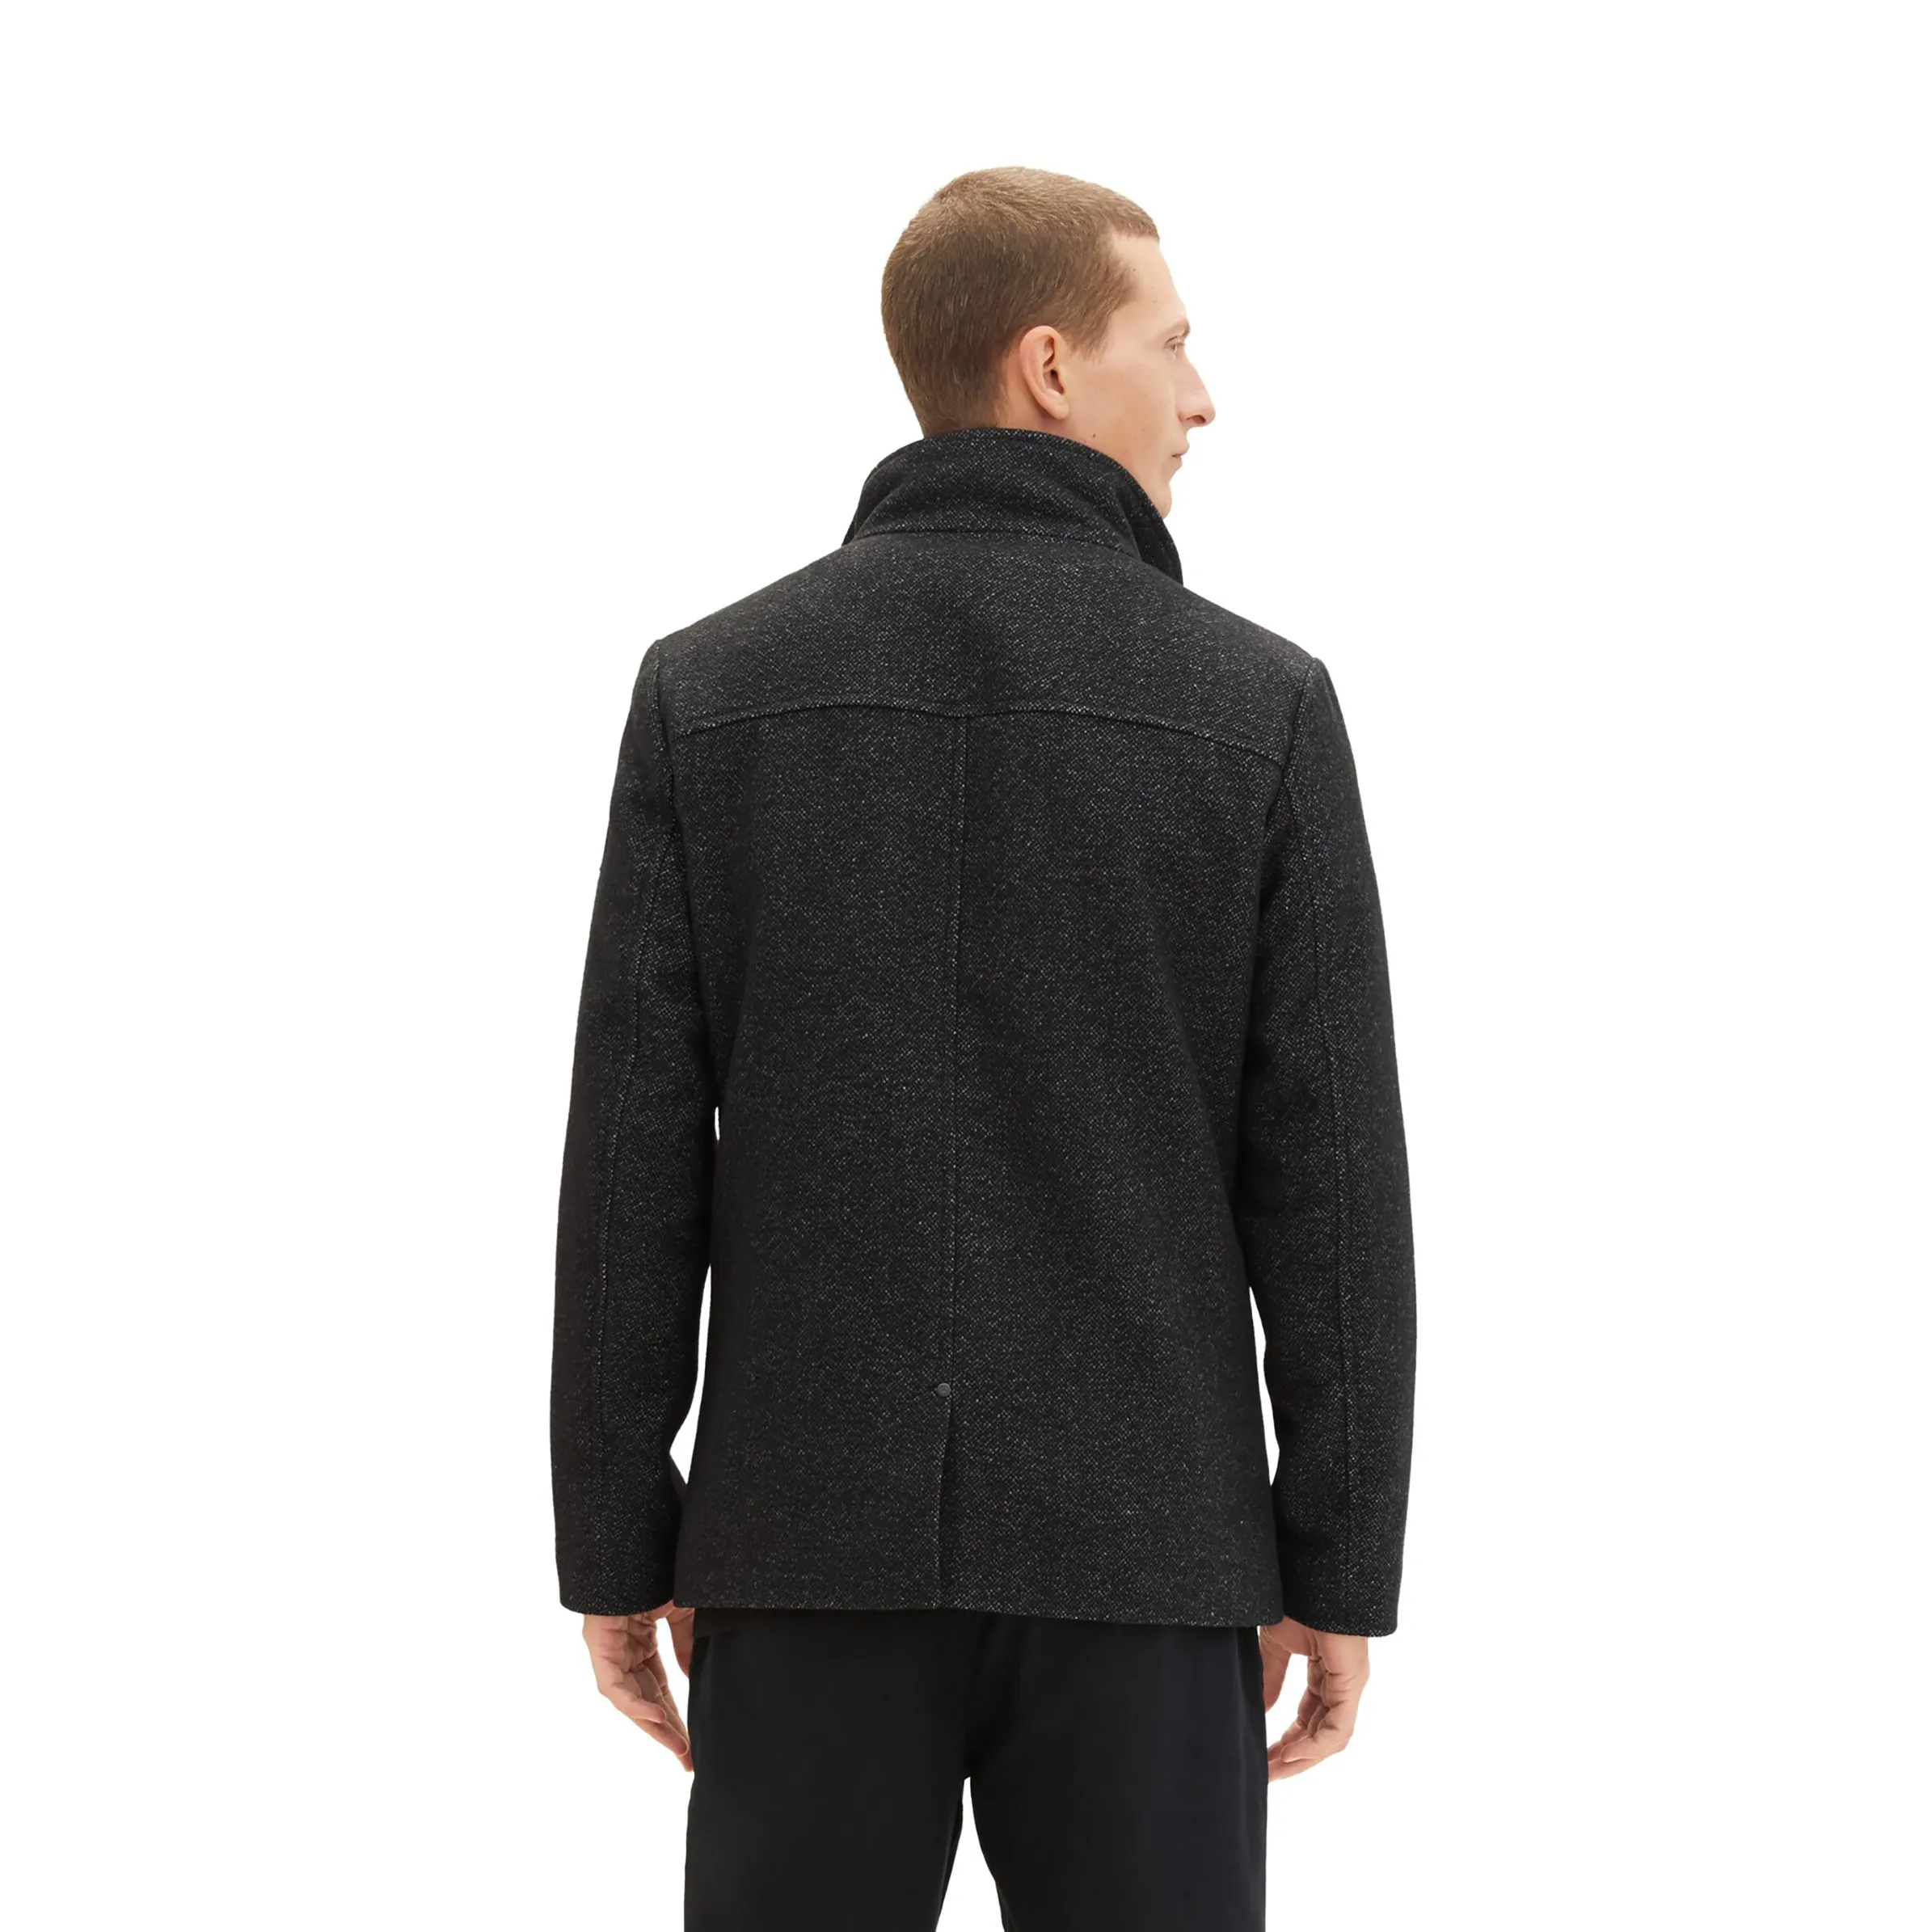 Tom Tailor 1037345 wool jacket 2 in 1 Grau 884289 32521 2